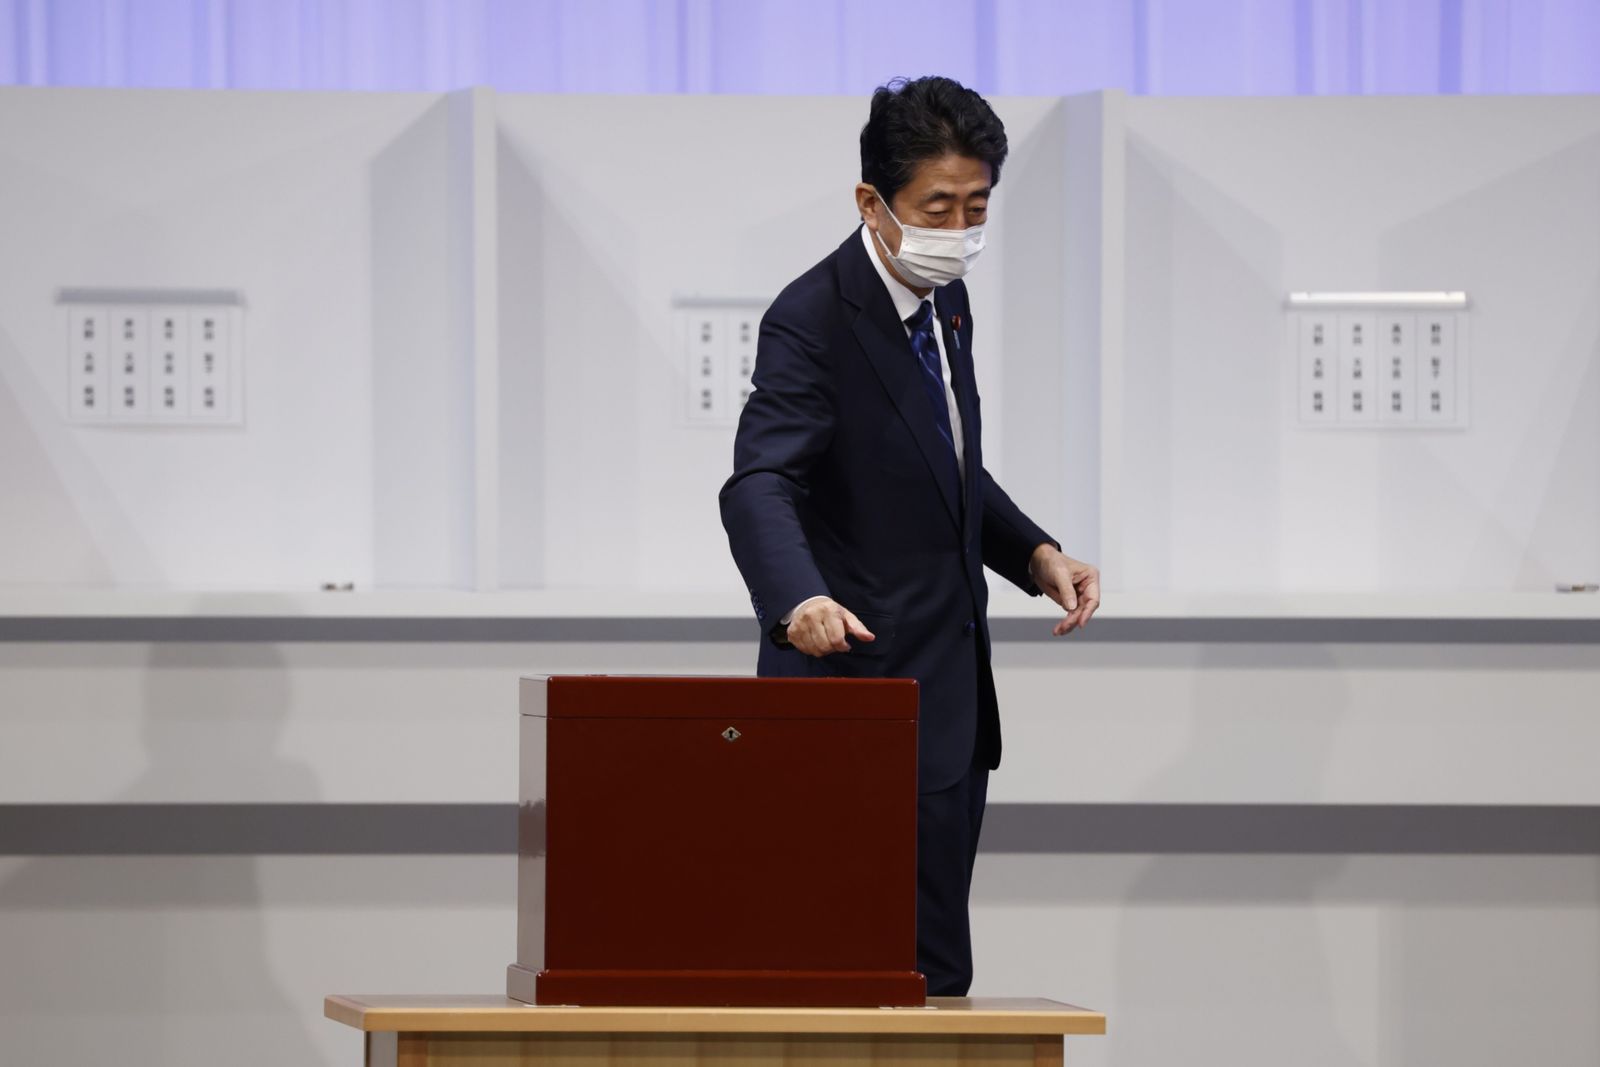 رئيس الوزراء الياباني السابق شينزو آبي يدلي بصوته في الانتخابات على زعامة الحزب الديمقراطي الليبرالي الحاكم في طوكيو - 29 سبتمبر 2021 - Bloomberg